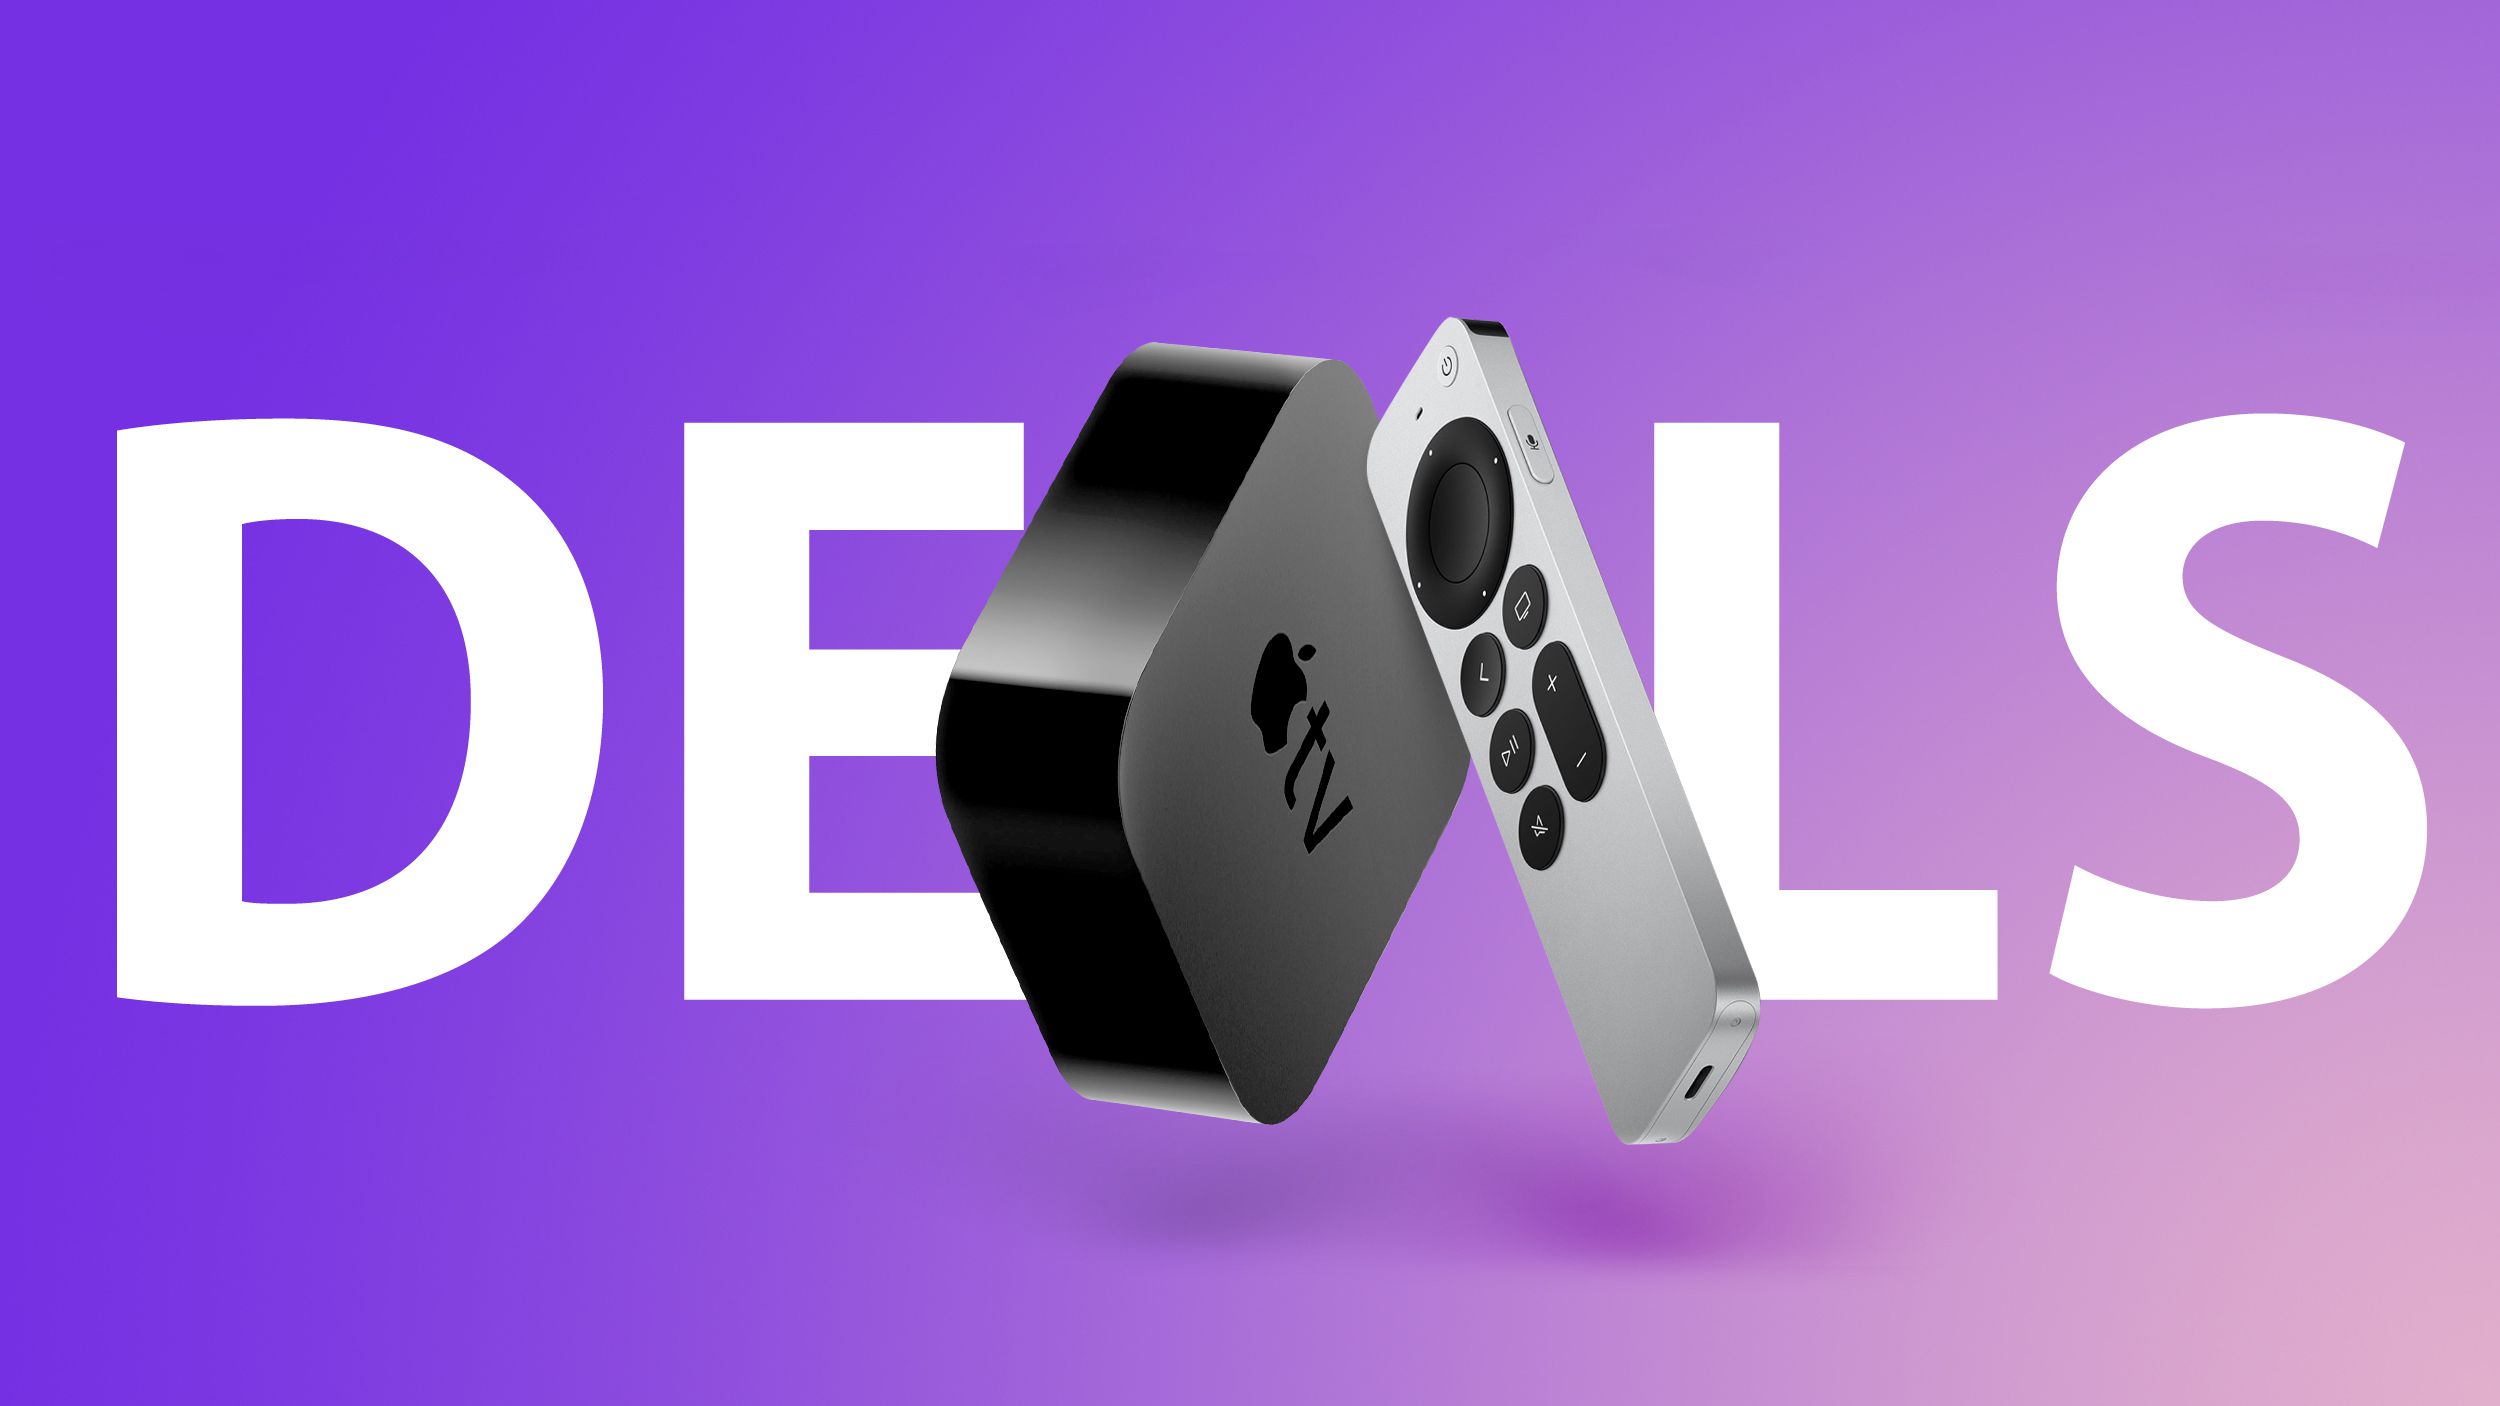 Offerte: ottieni una Apple TV 4K 2021 da 64 GB al prezzo più basso di tutti i tempi di $ 109,99